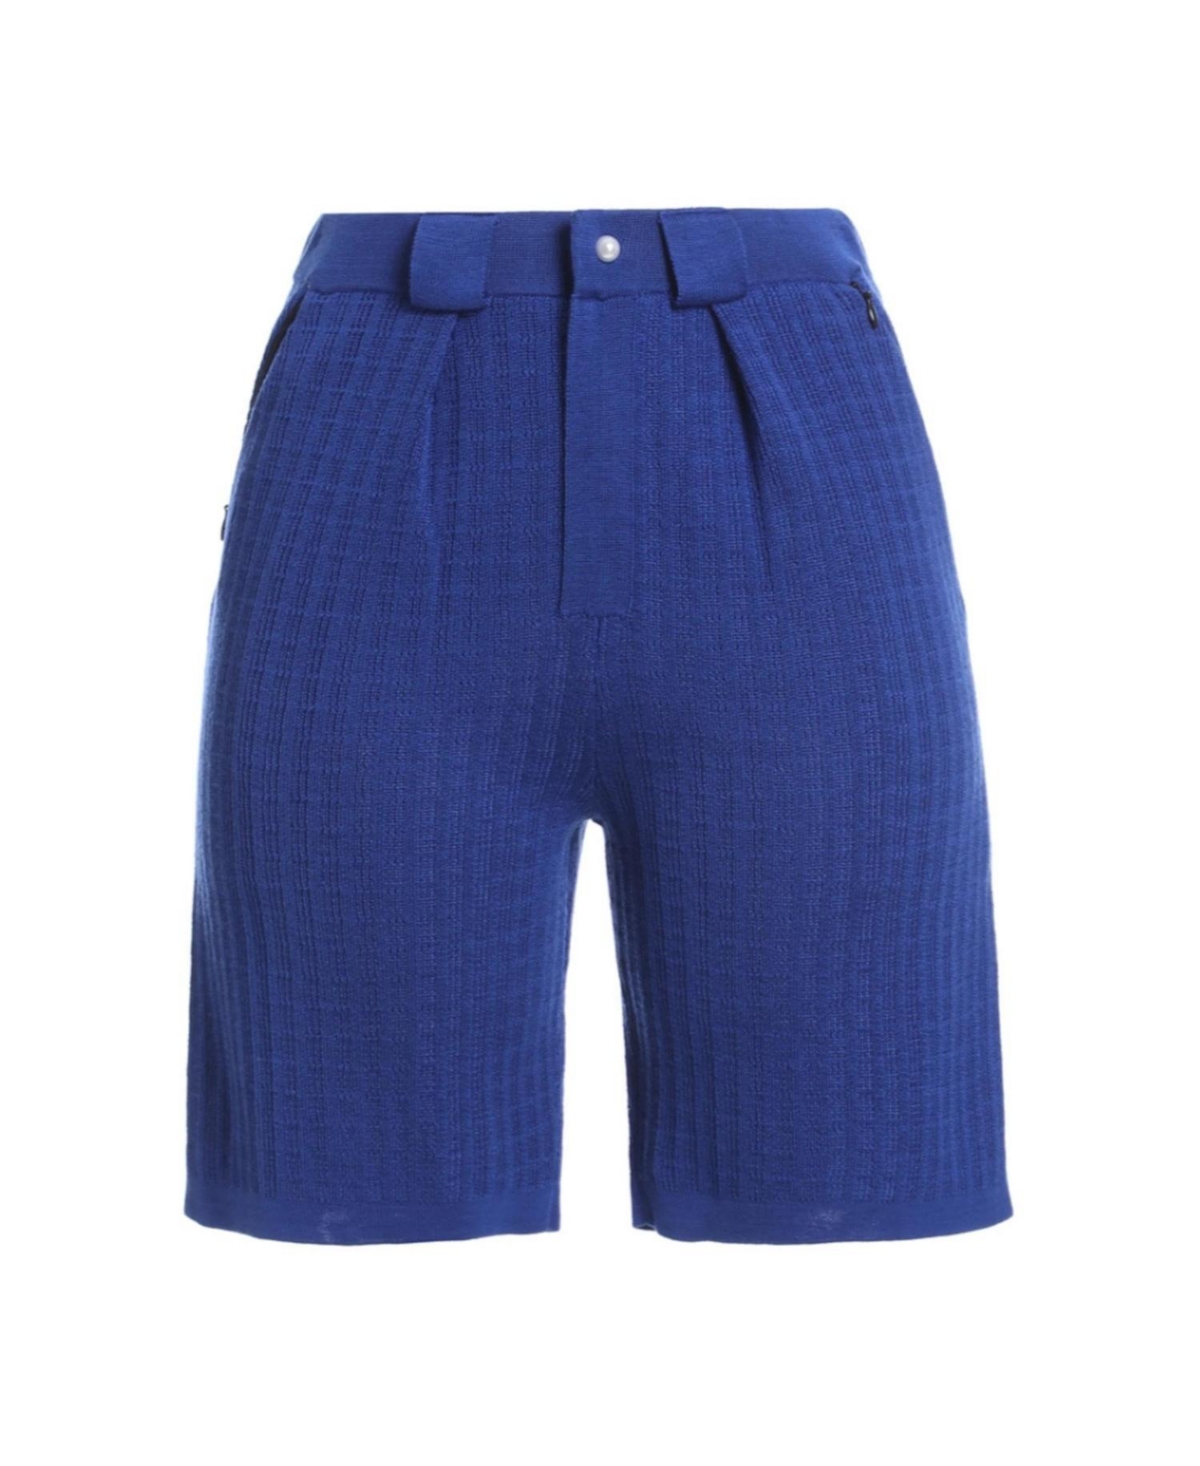 Bellemere Women's Artistic Tencel Pants - Blue